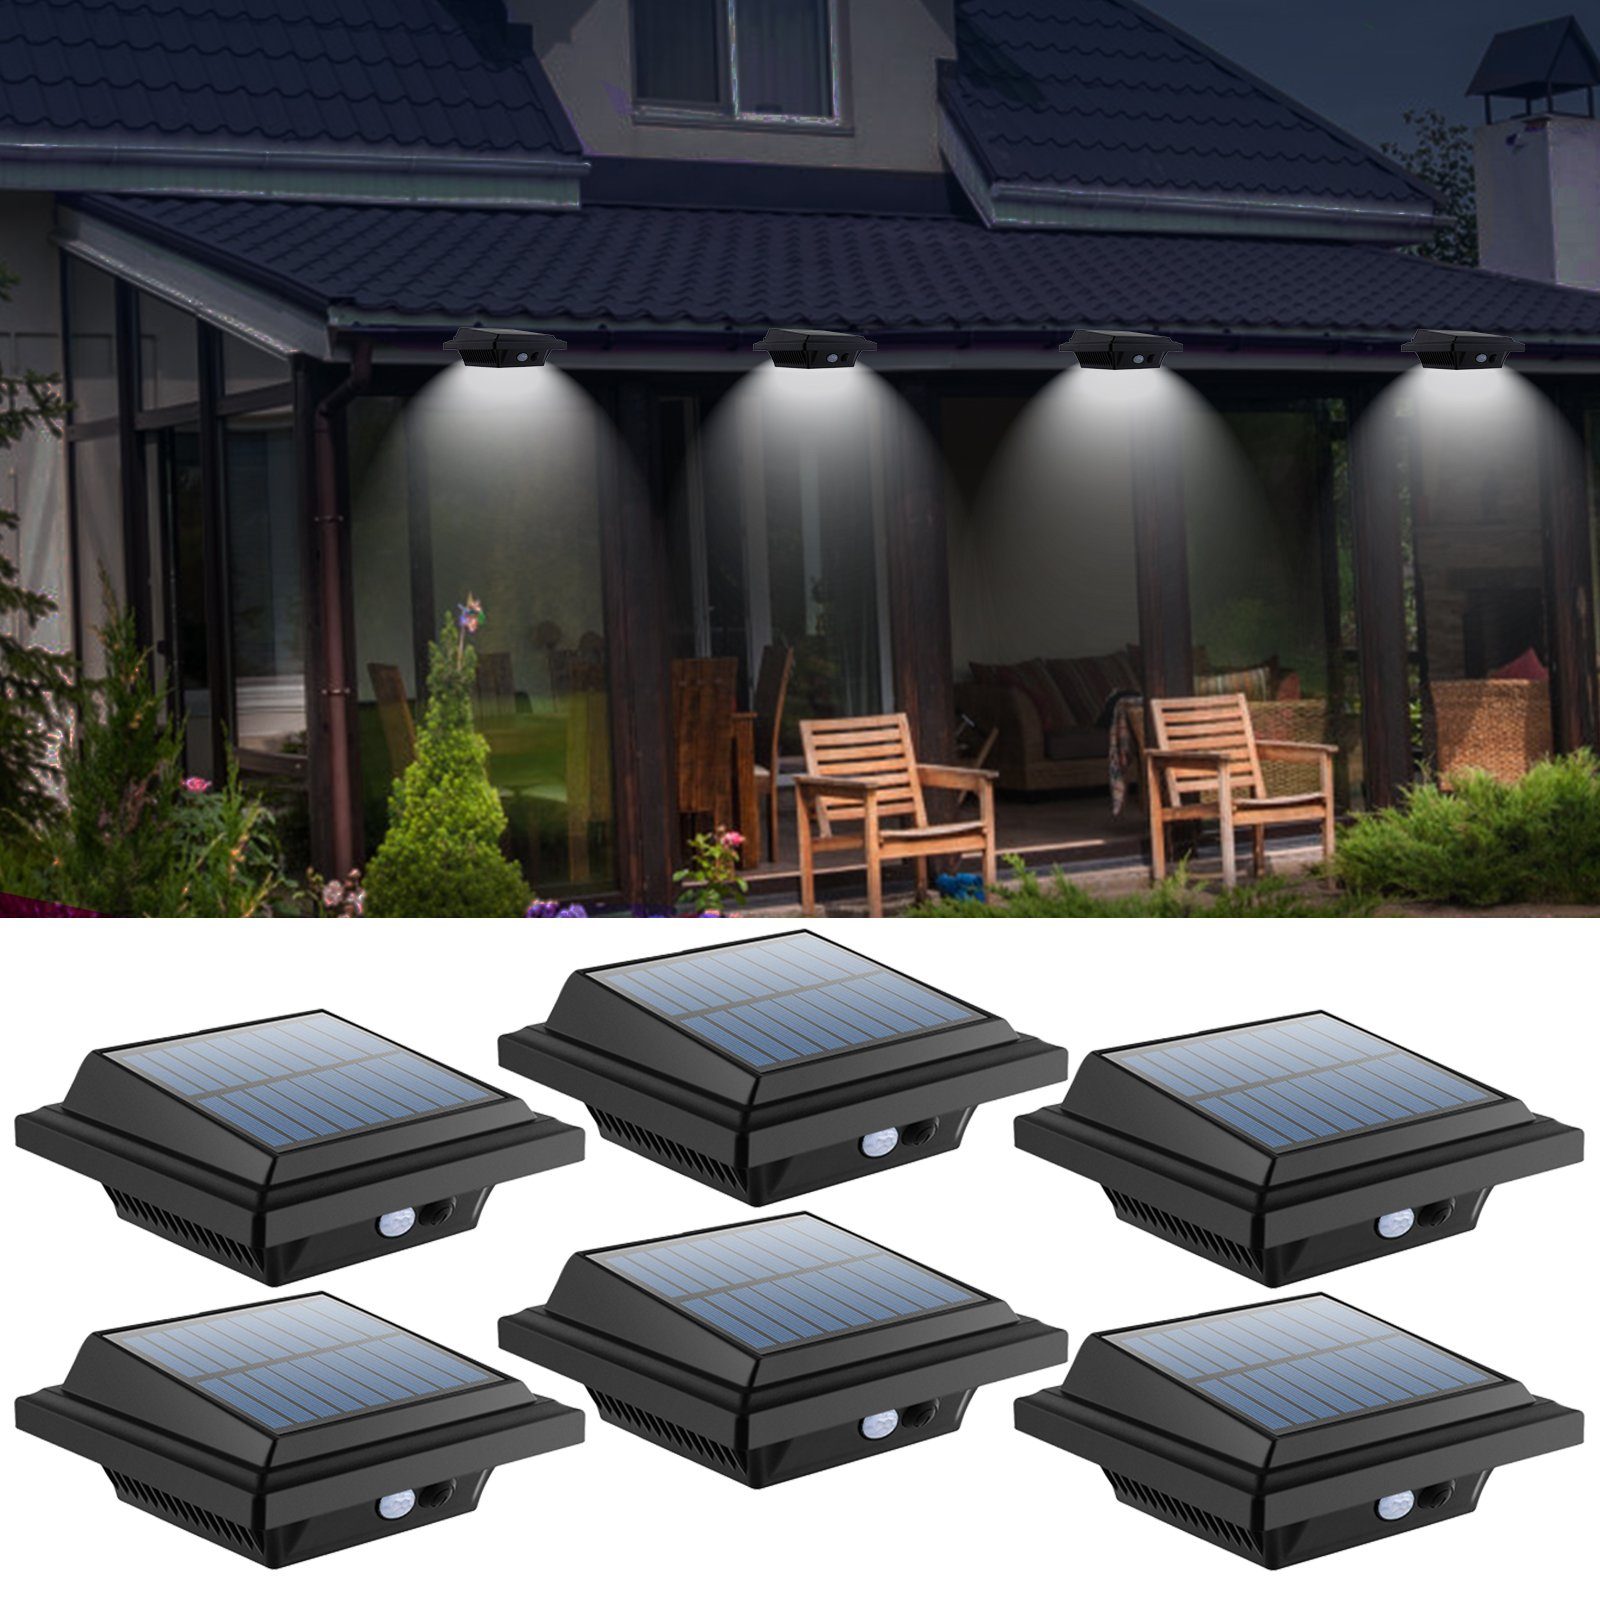 8Stk Solarlicht Außen 12 LEDs Warmweiß Dachrinnen Zaun Lampen Garten Solarlampe 